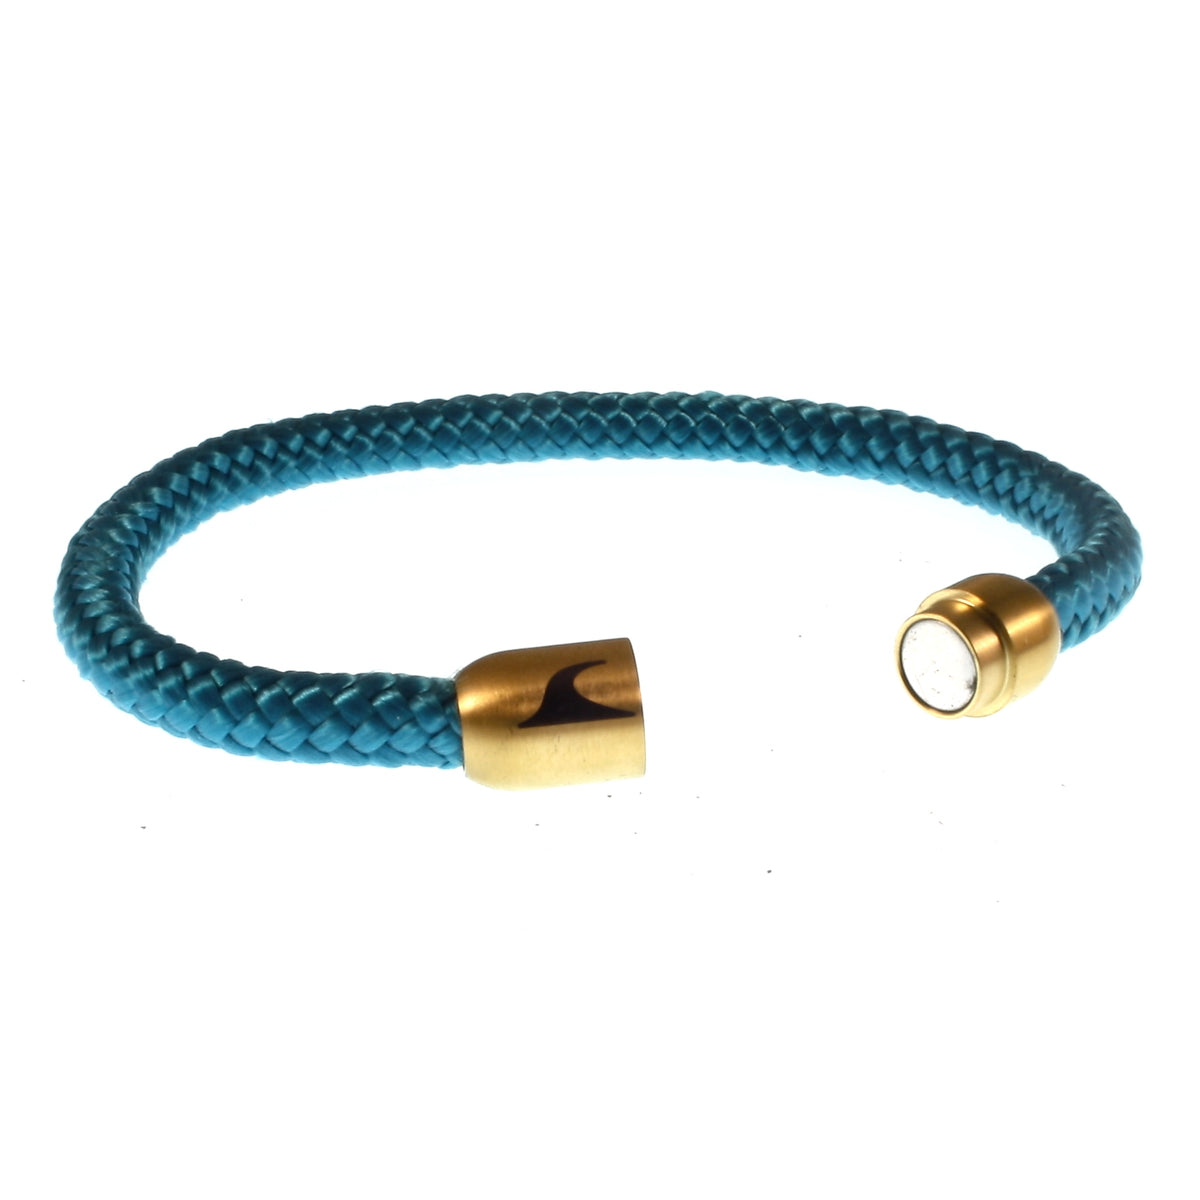 Herren-segeltau-armband-damen-sylt-blau-gold-geflochten-Edelstahlverschluss-offen-wavepirate-shop-st